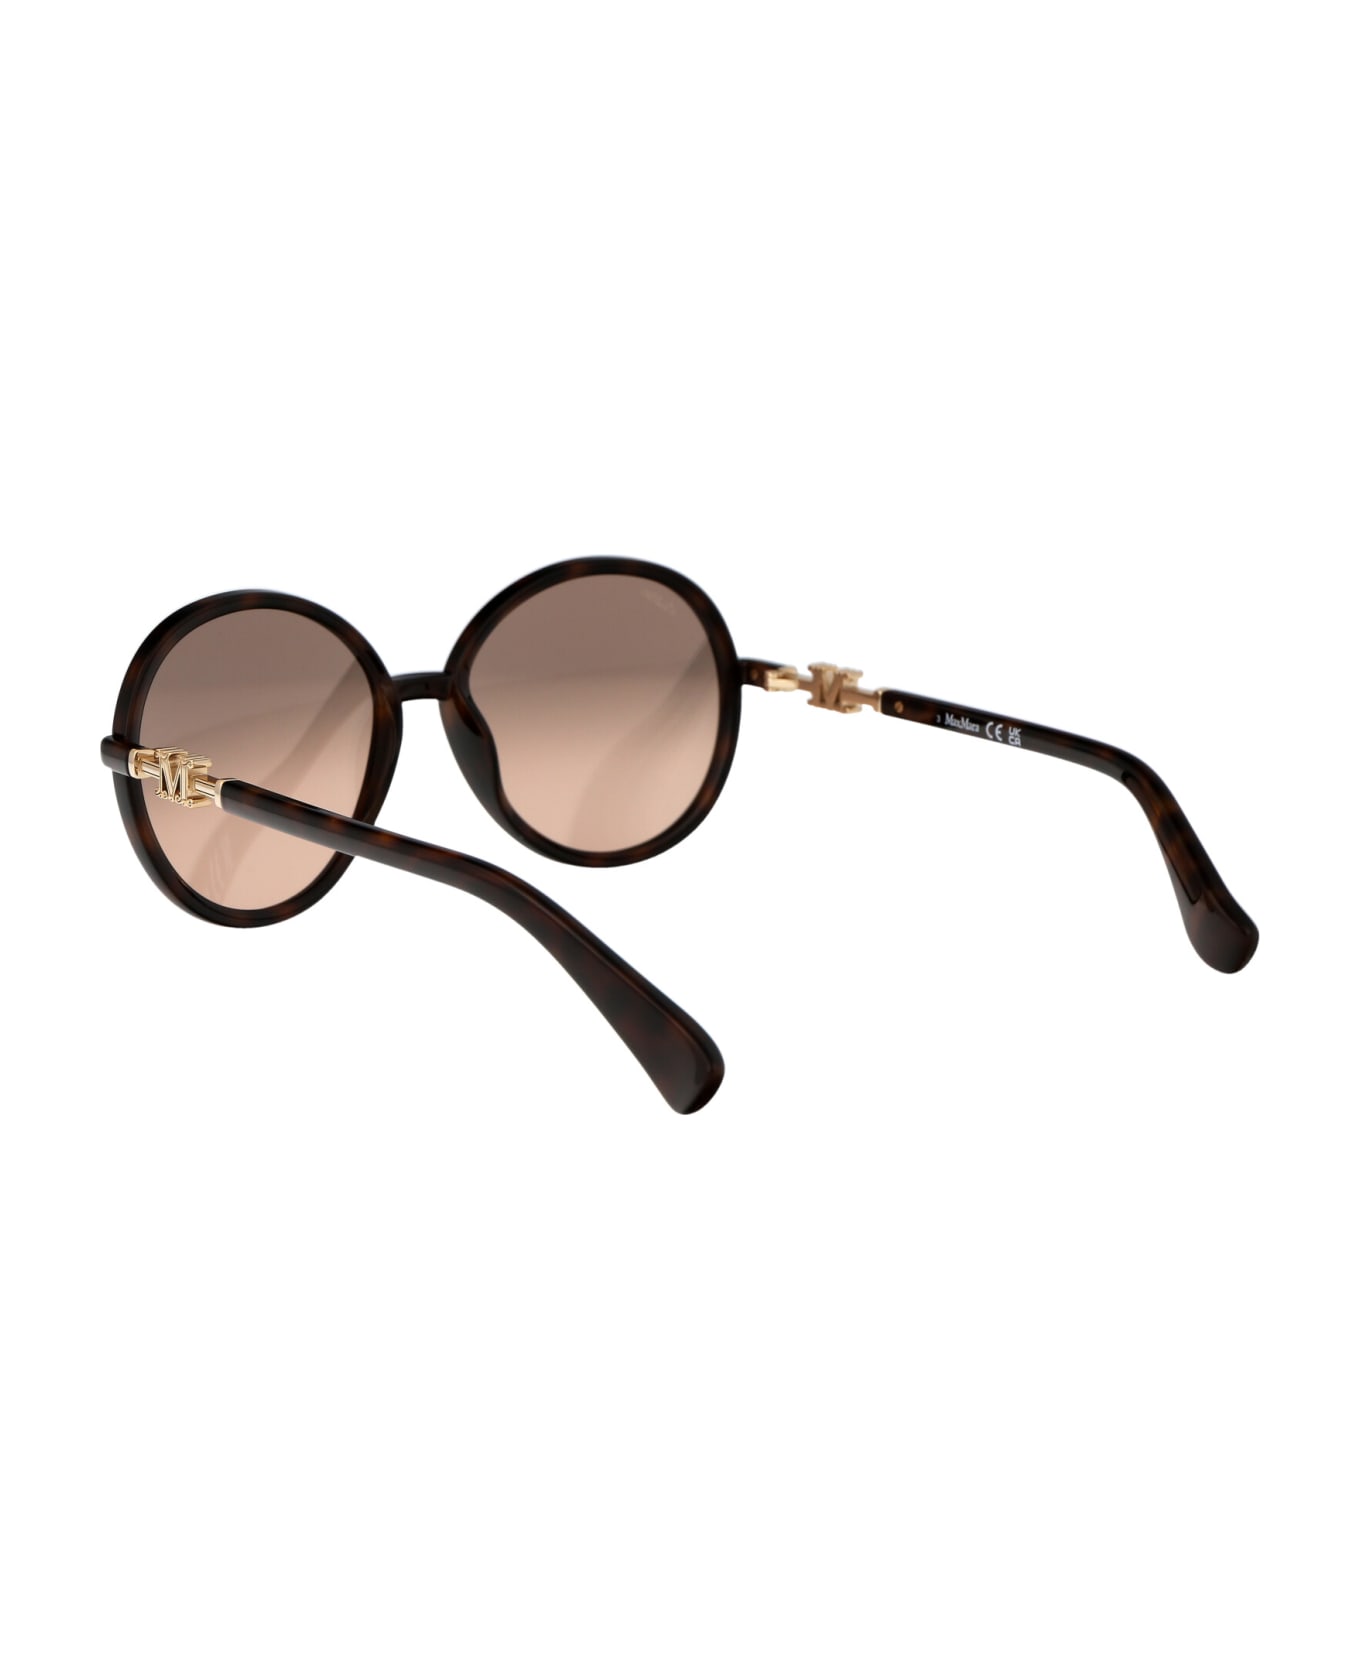 Max Mara Emme15 Sunglasses - 52G Avana Scura/Marrone Specchiato